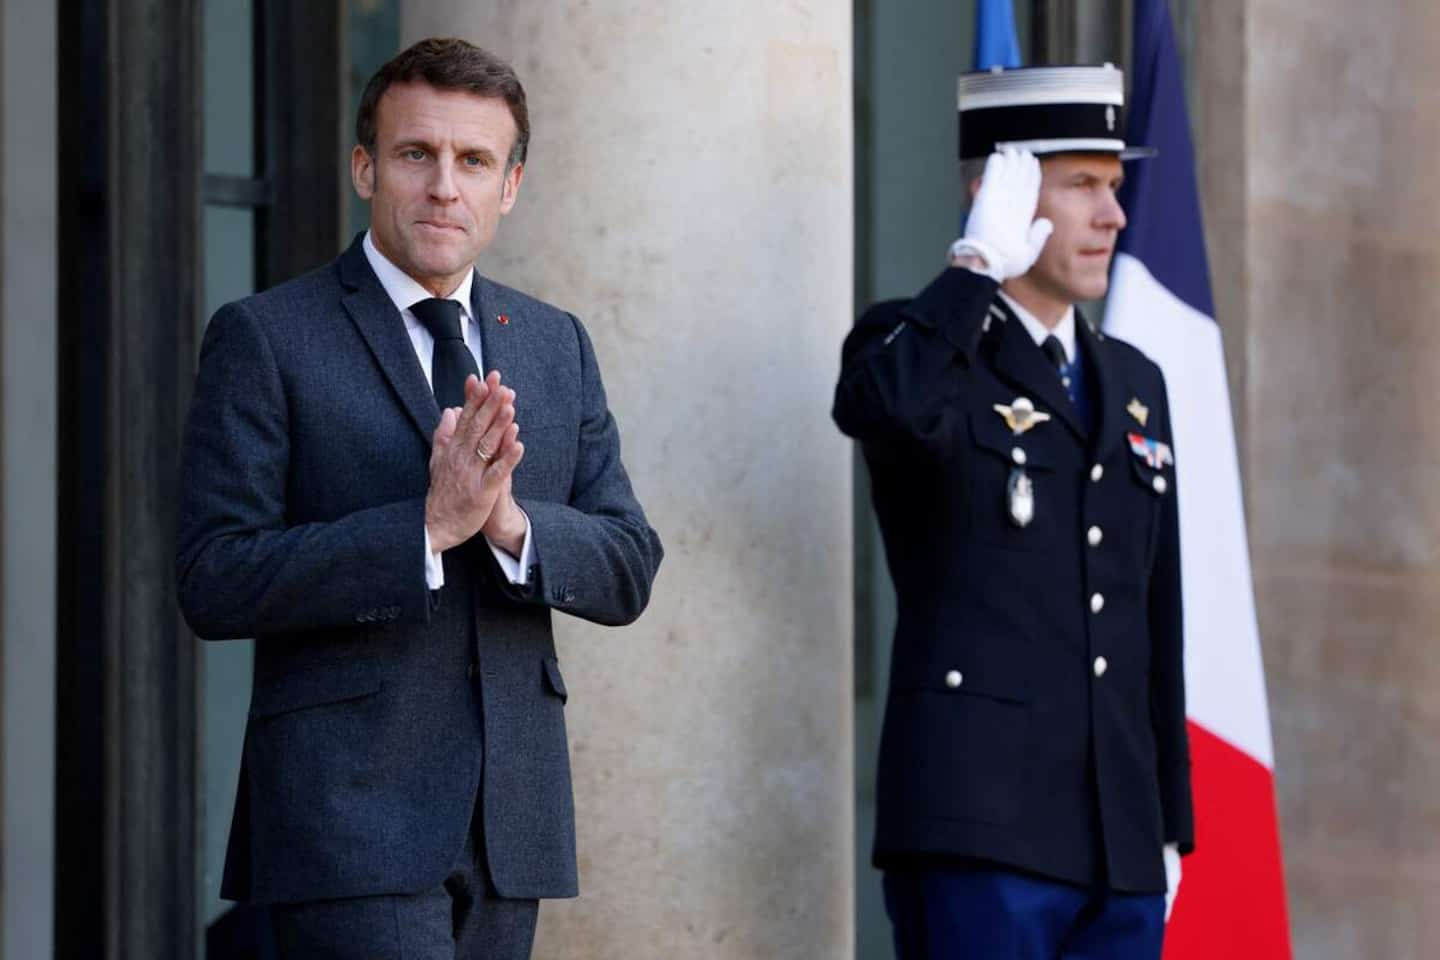 Macron told Zelensky that France would deliver light combat tanks to Ukraine